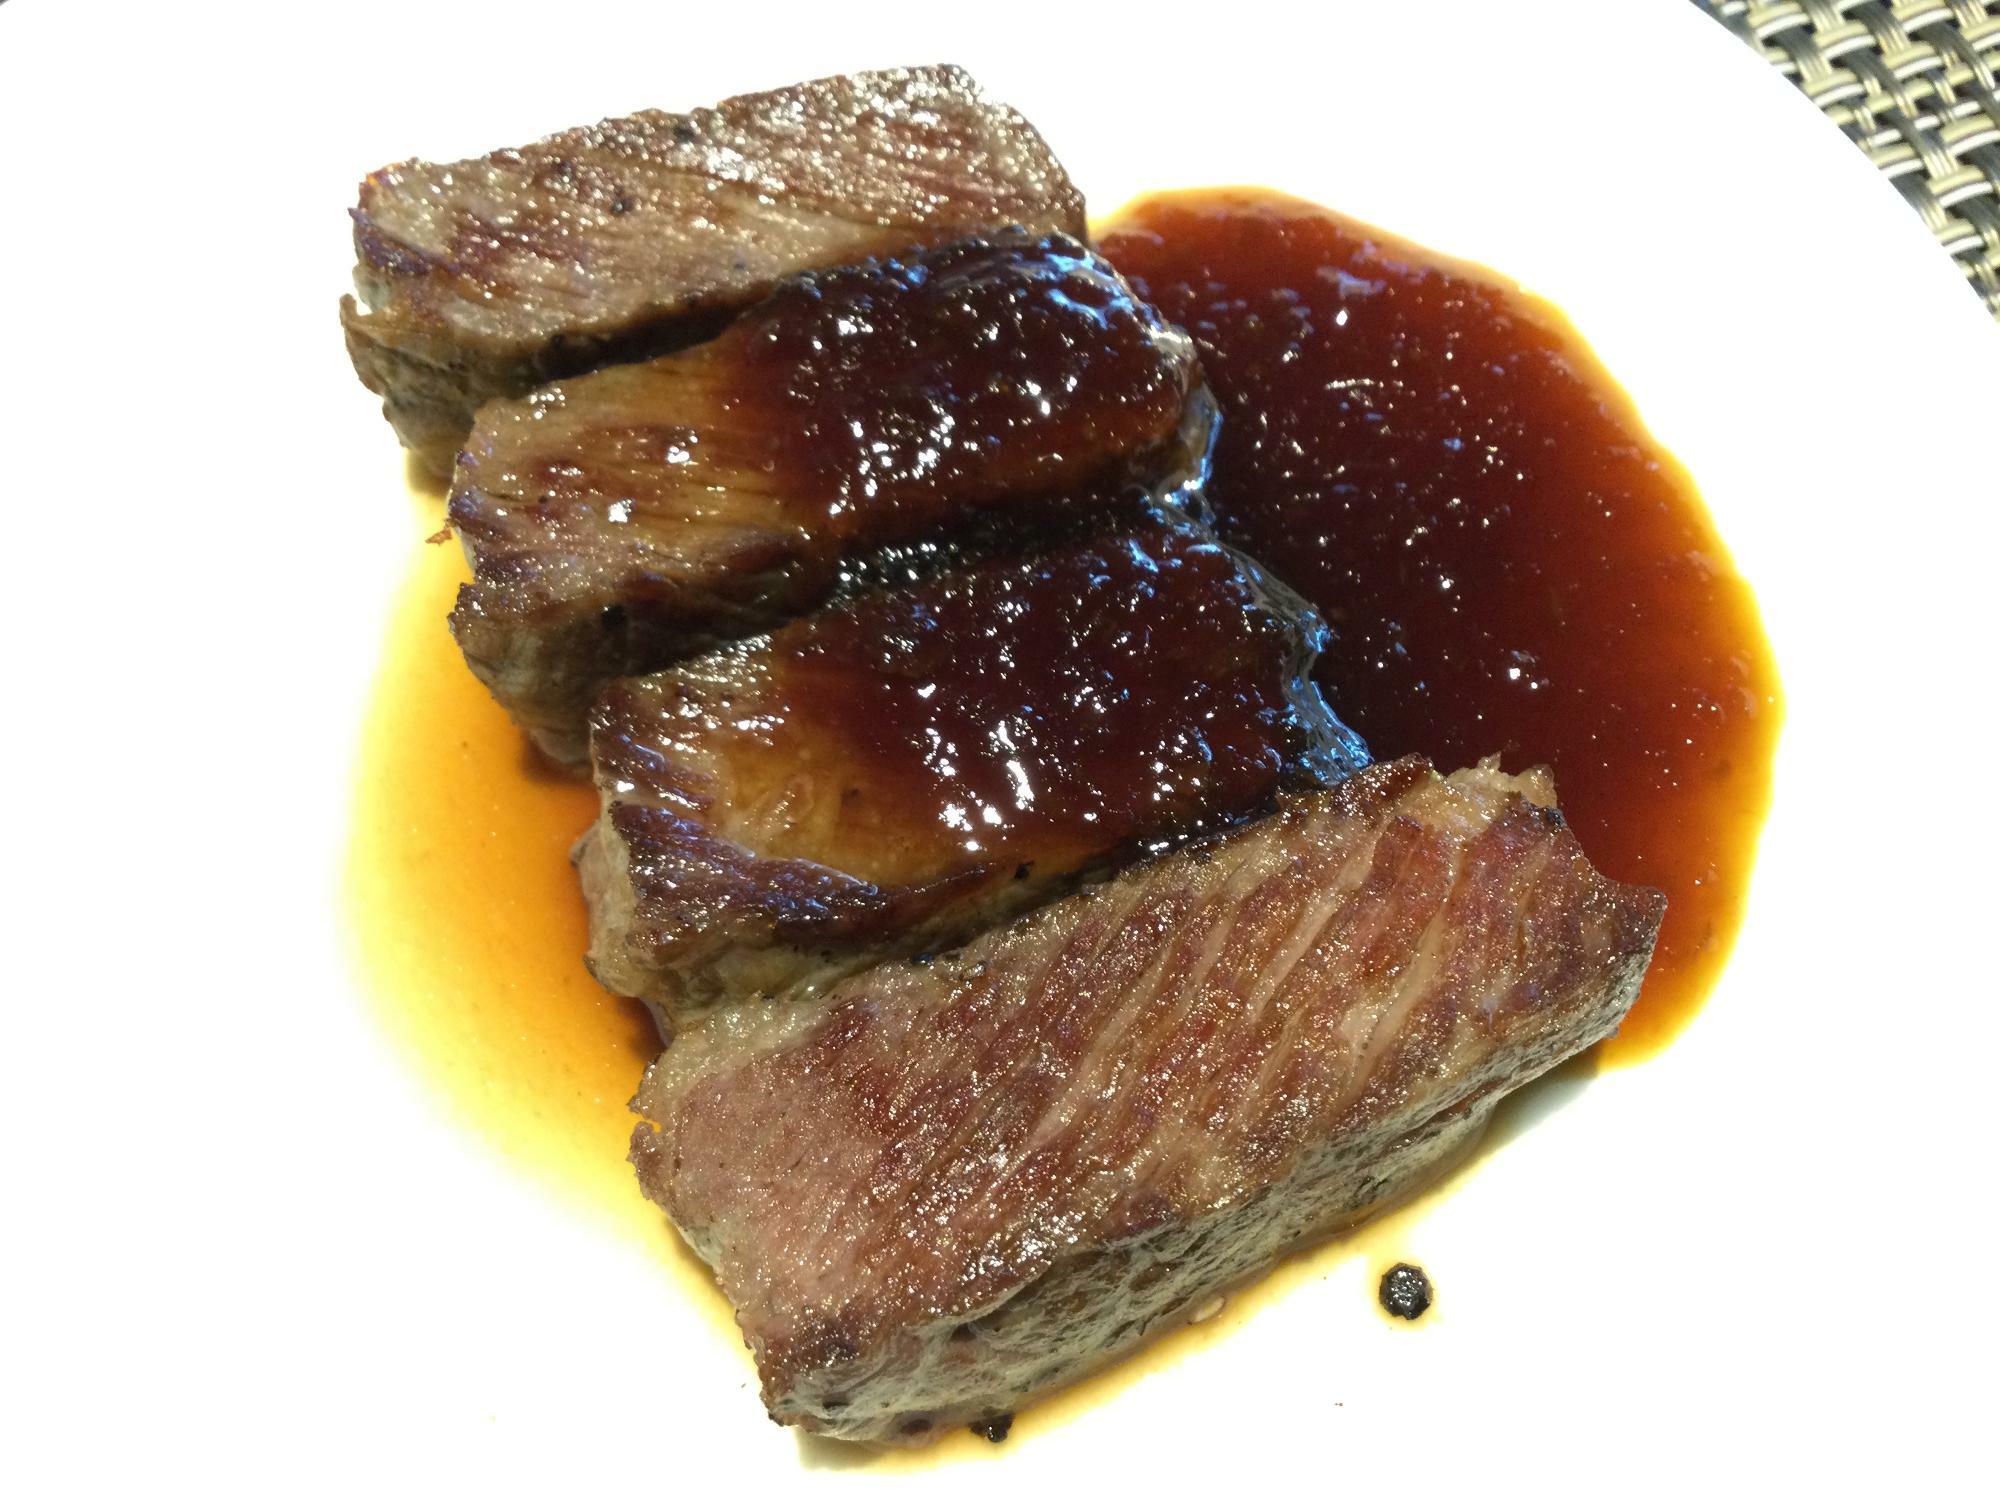  北海道産牛肉のステーキ